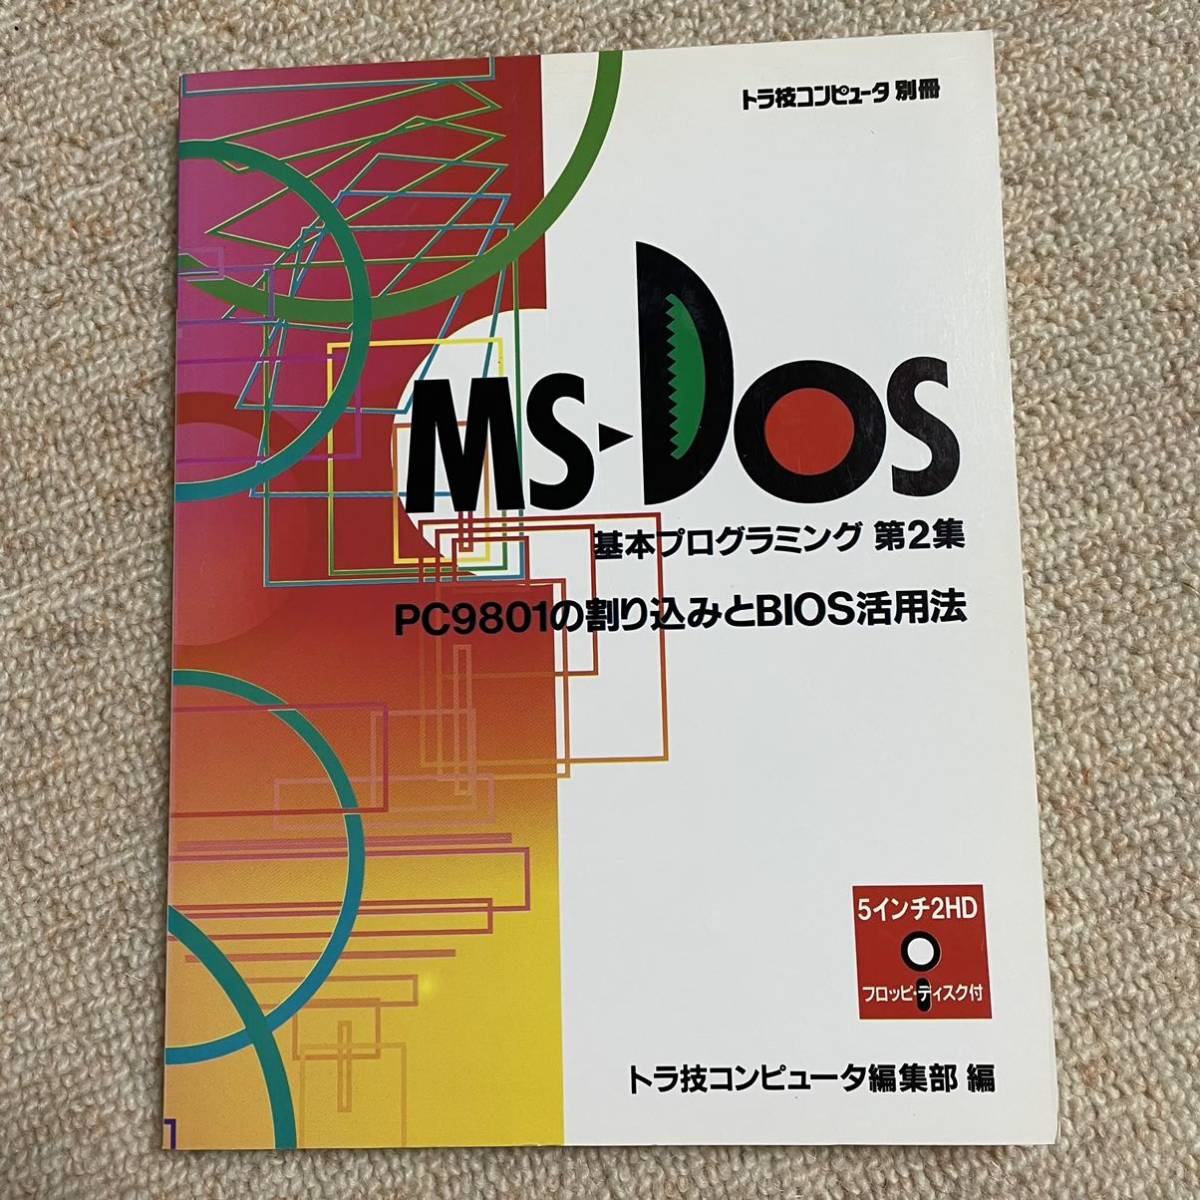 MS-DOS 2 PC9801. десятая часть включая .BIOS практическое применение закон тигр . компьютер редактирование часть сборник 